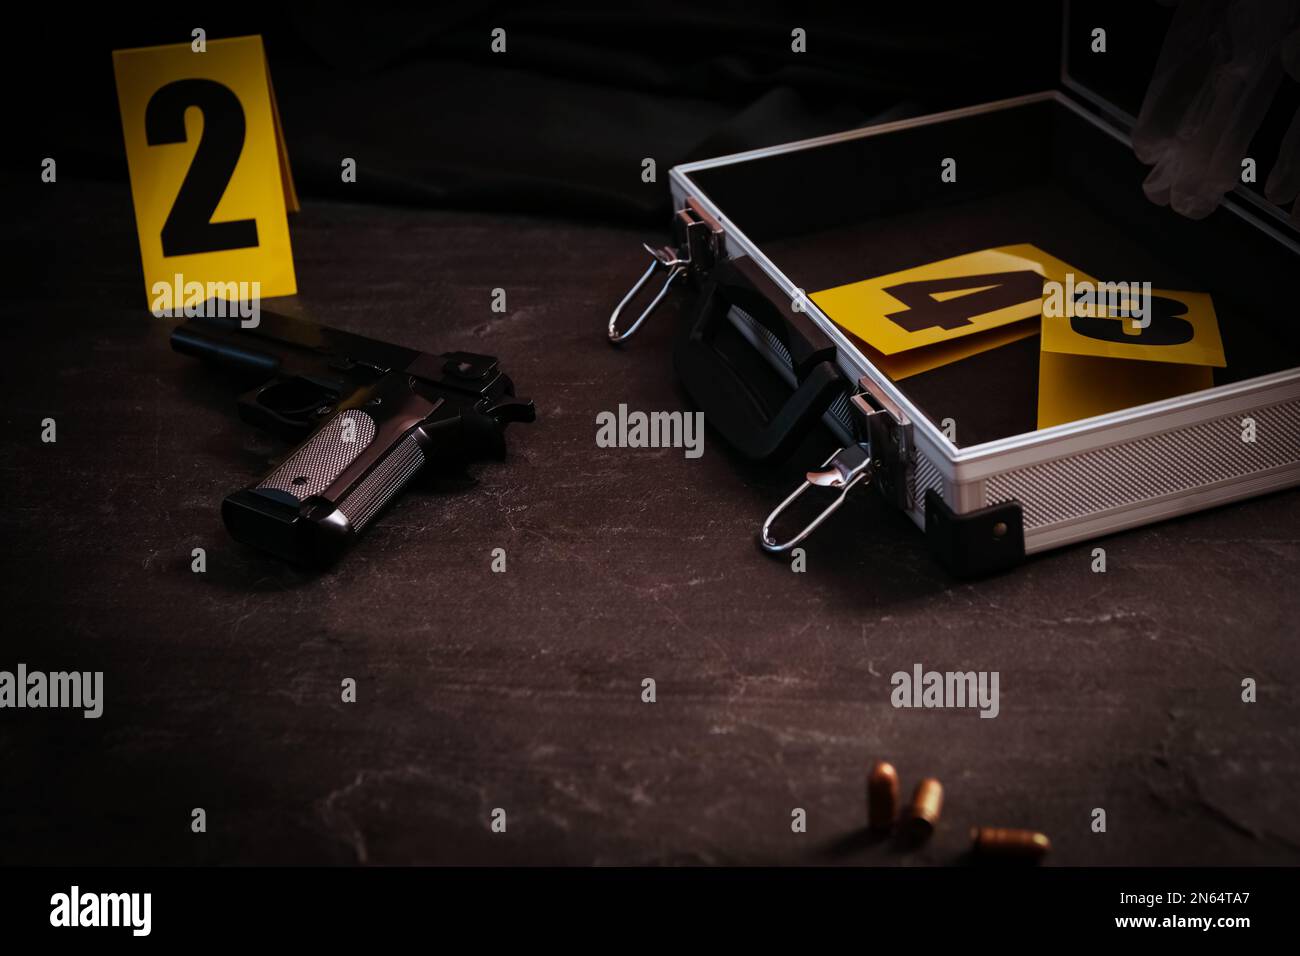 Pistola e custodia aperta con indicatori di prova sul tavolo nero ardesia. Scena del crimine Foto Stock